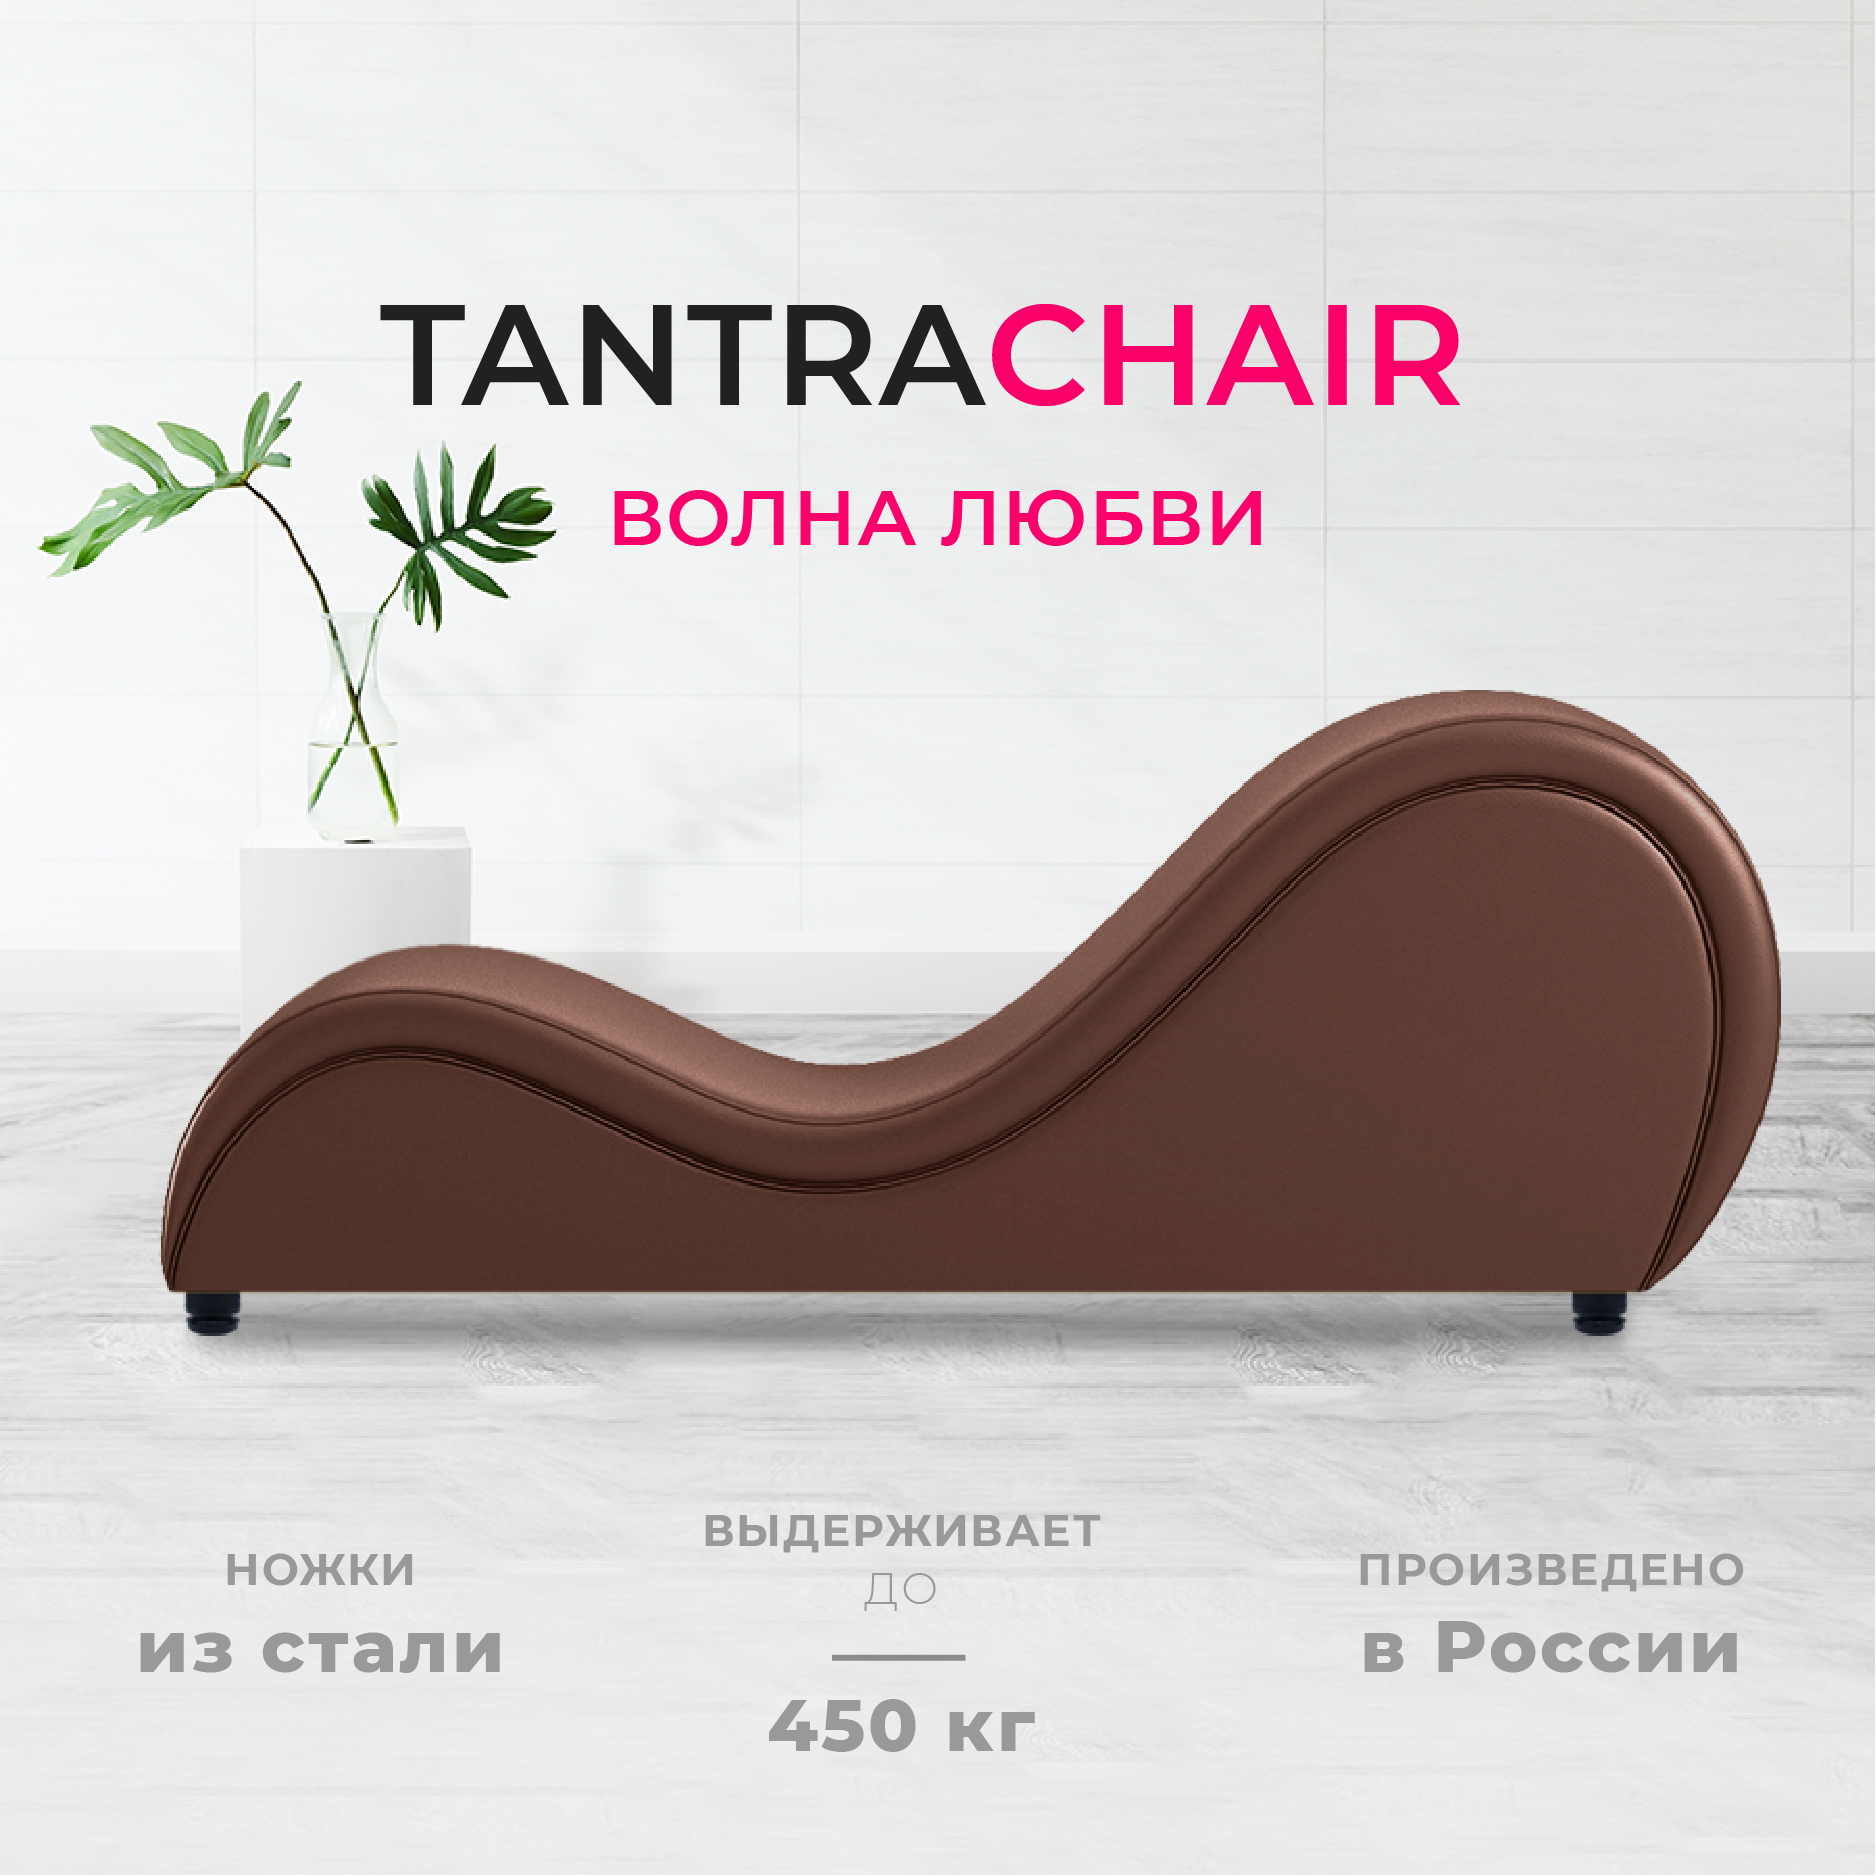 Мебель для секса и качели - купить в Москве по выгодной цене